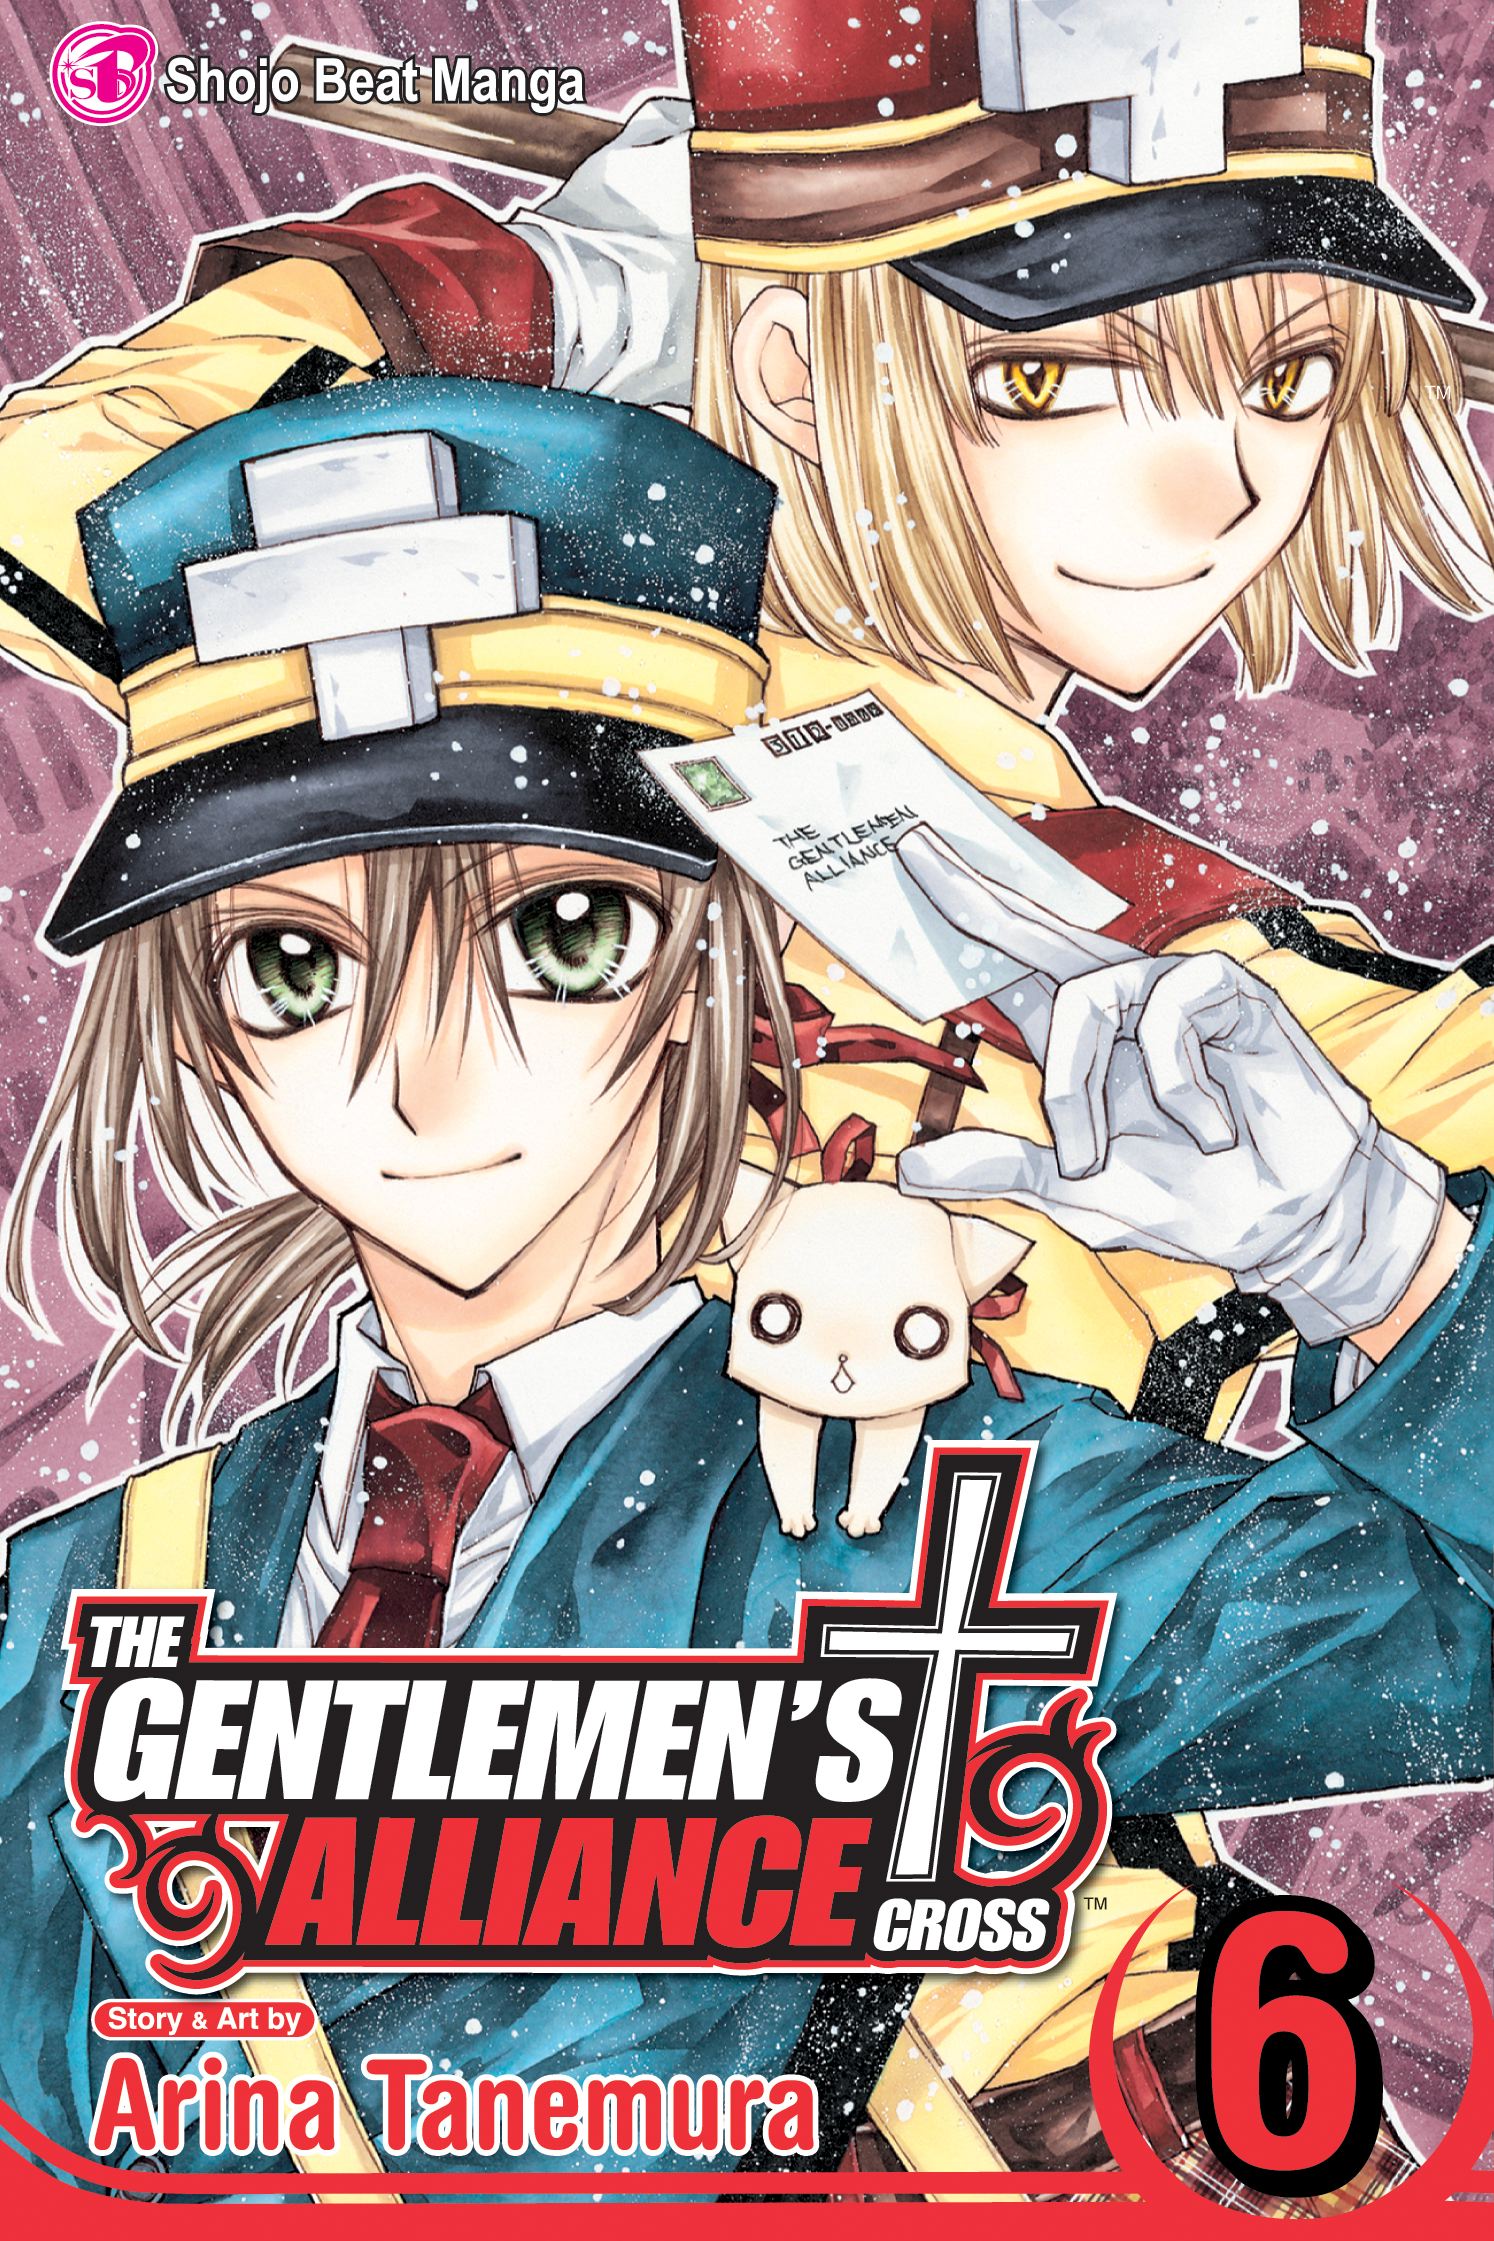 Product Image: The Gentlemen's Alliance †, Vol. 6